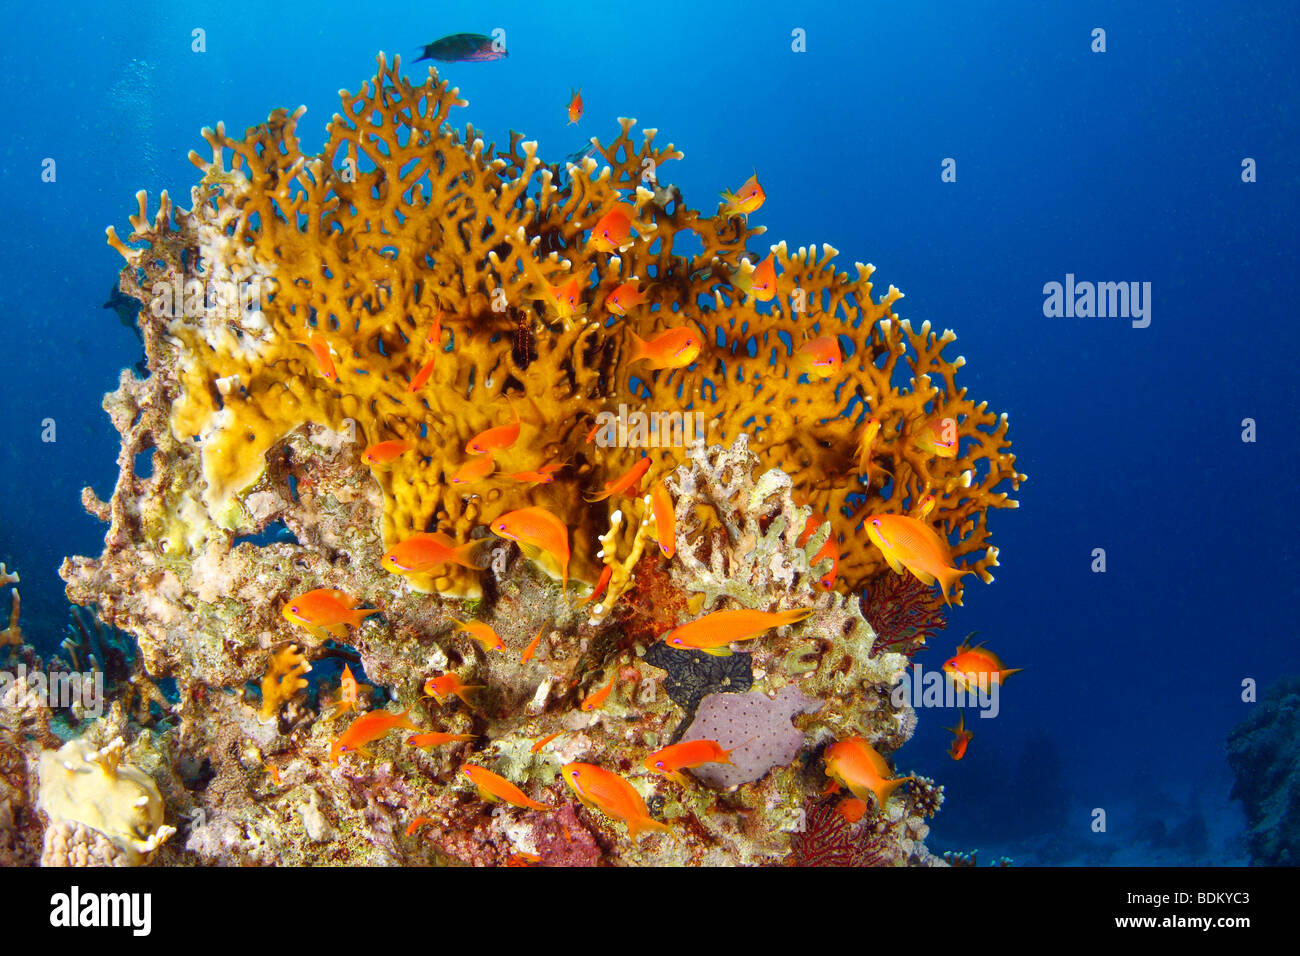 Luminose di colore arancione fuoco formazione corallina circondata da profonde acque blu del Mar Rosso e rosso-striped fairy basslets Foto Stock